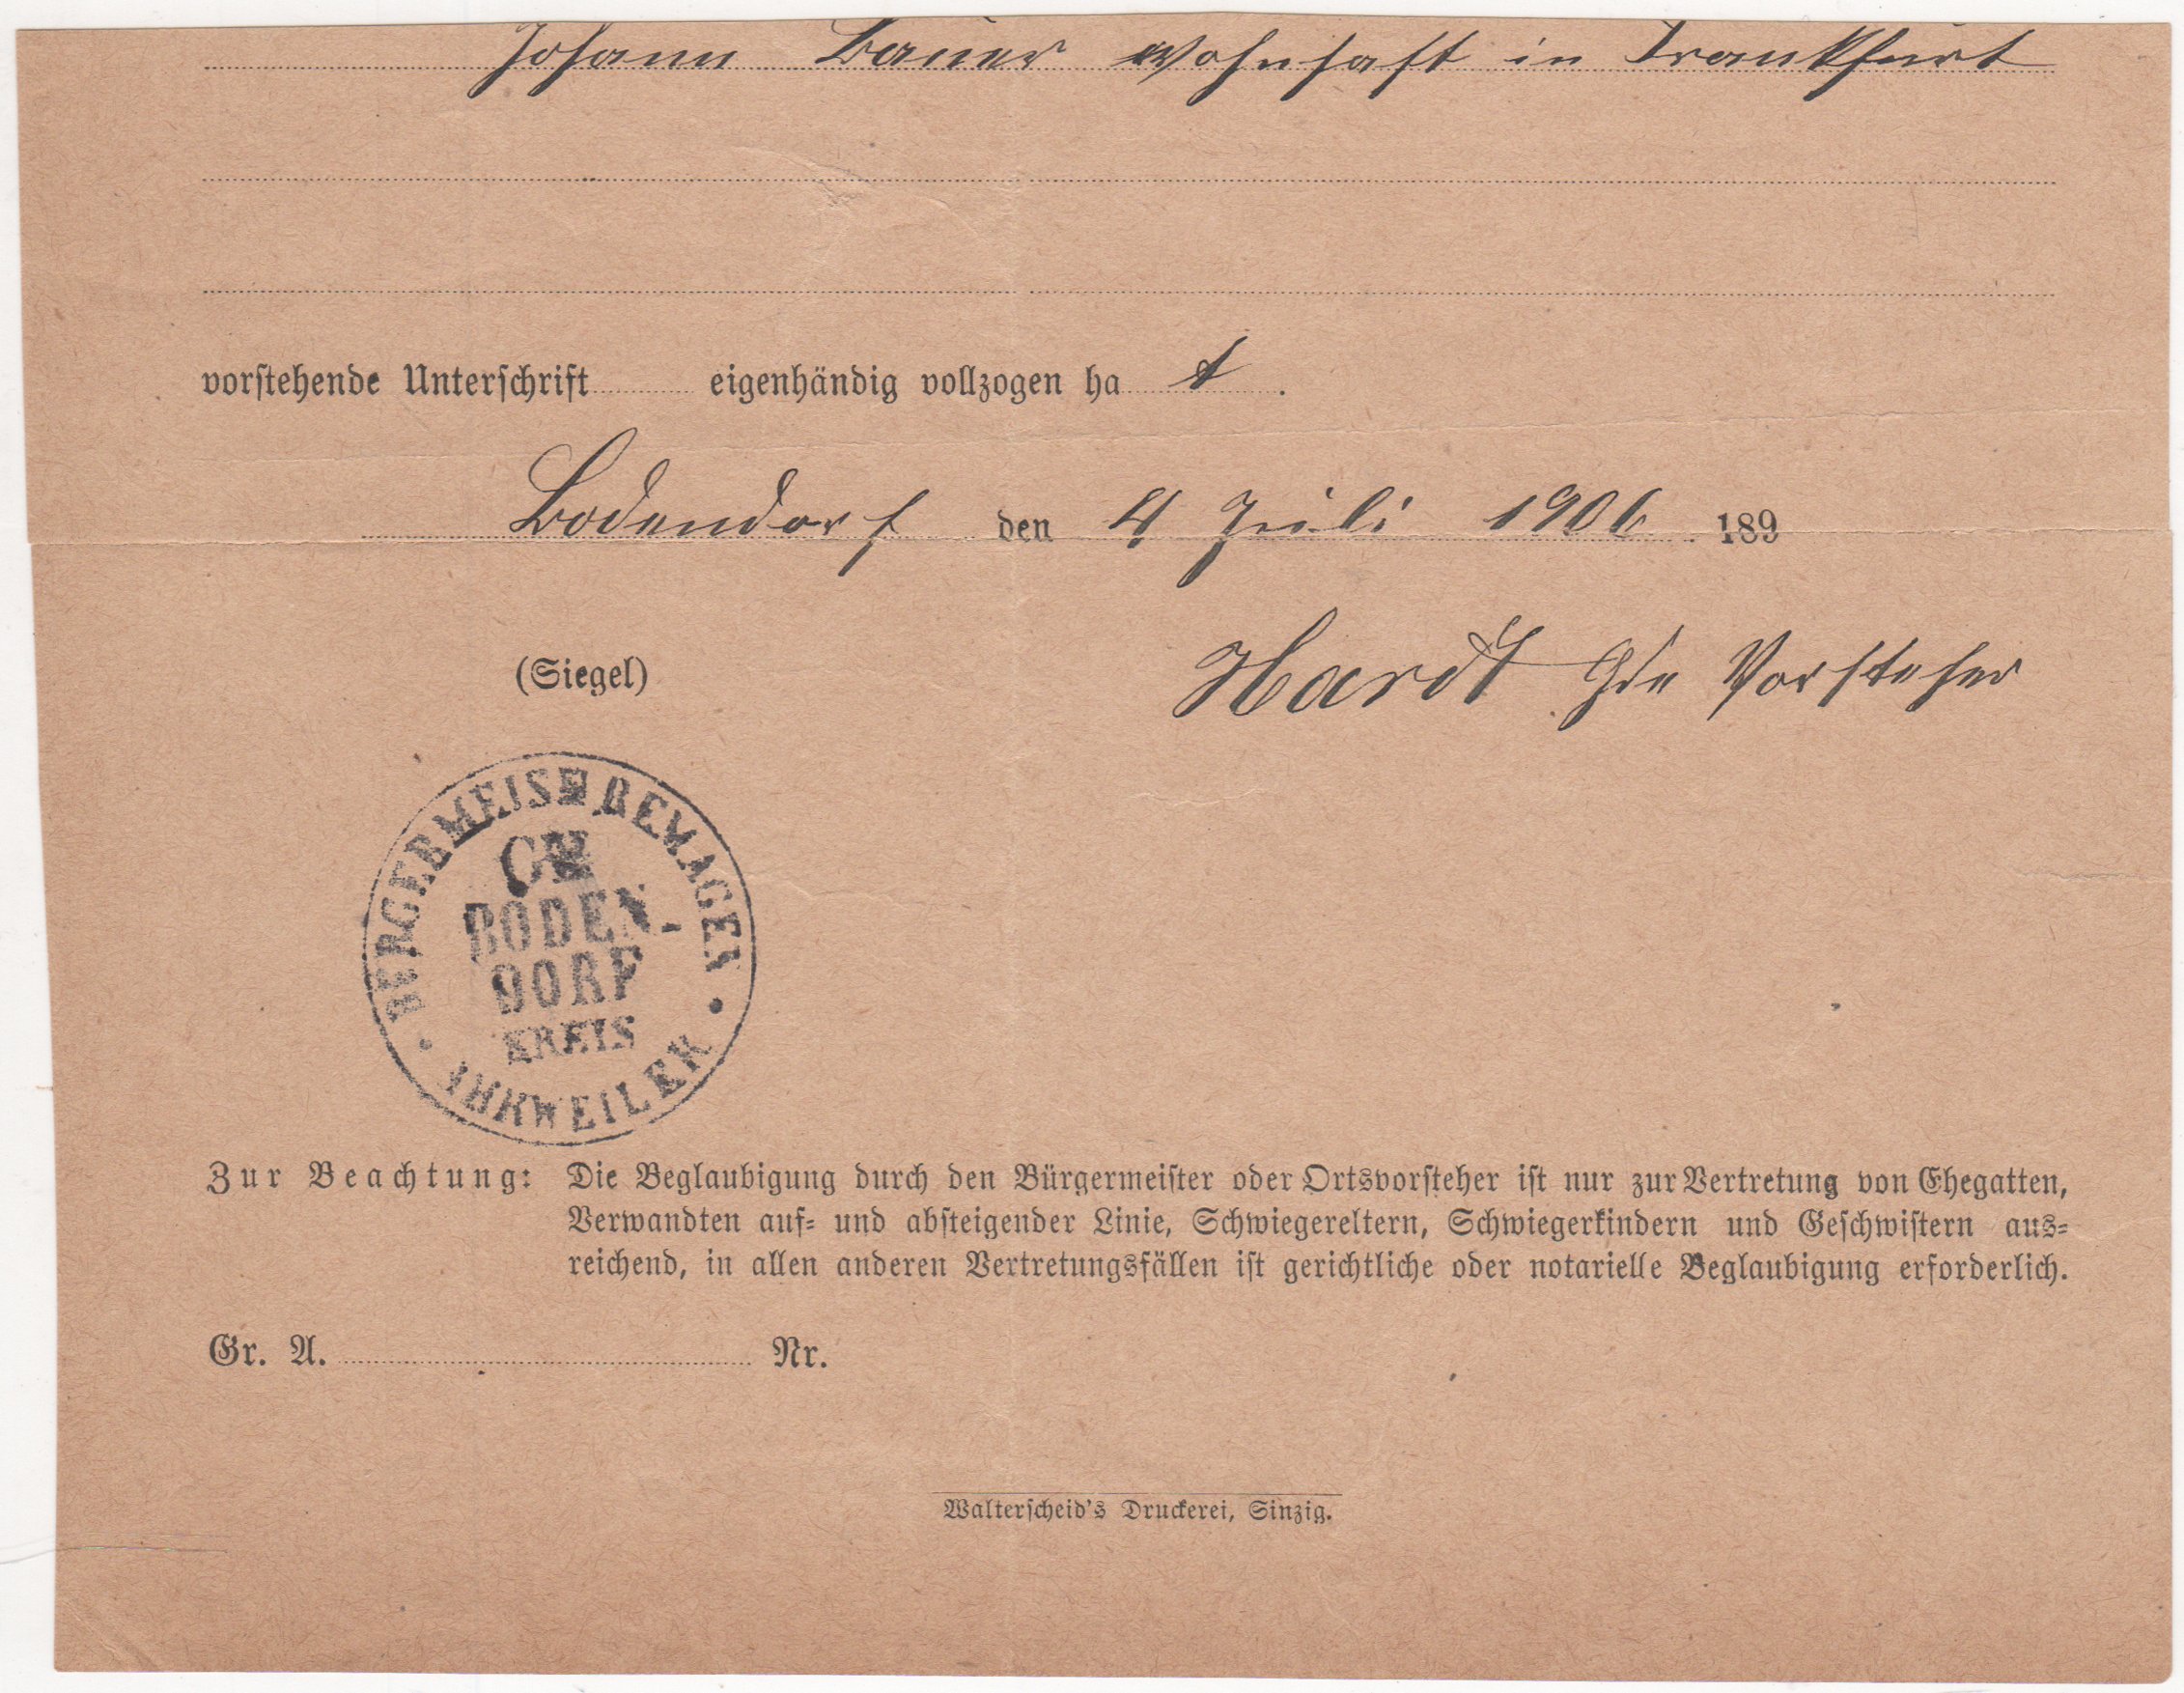 Bescheinigung vom 4. Juli 1906 des Ortsvorstehers, dass eine Unterschrift eigenhändig geleister wurde (Heimatarchiv Bad Bodendorf CC BY-NC-SA)